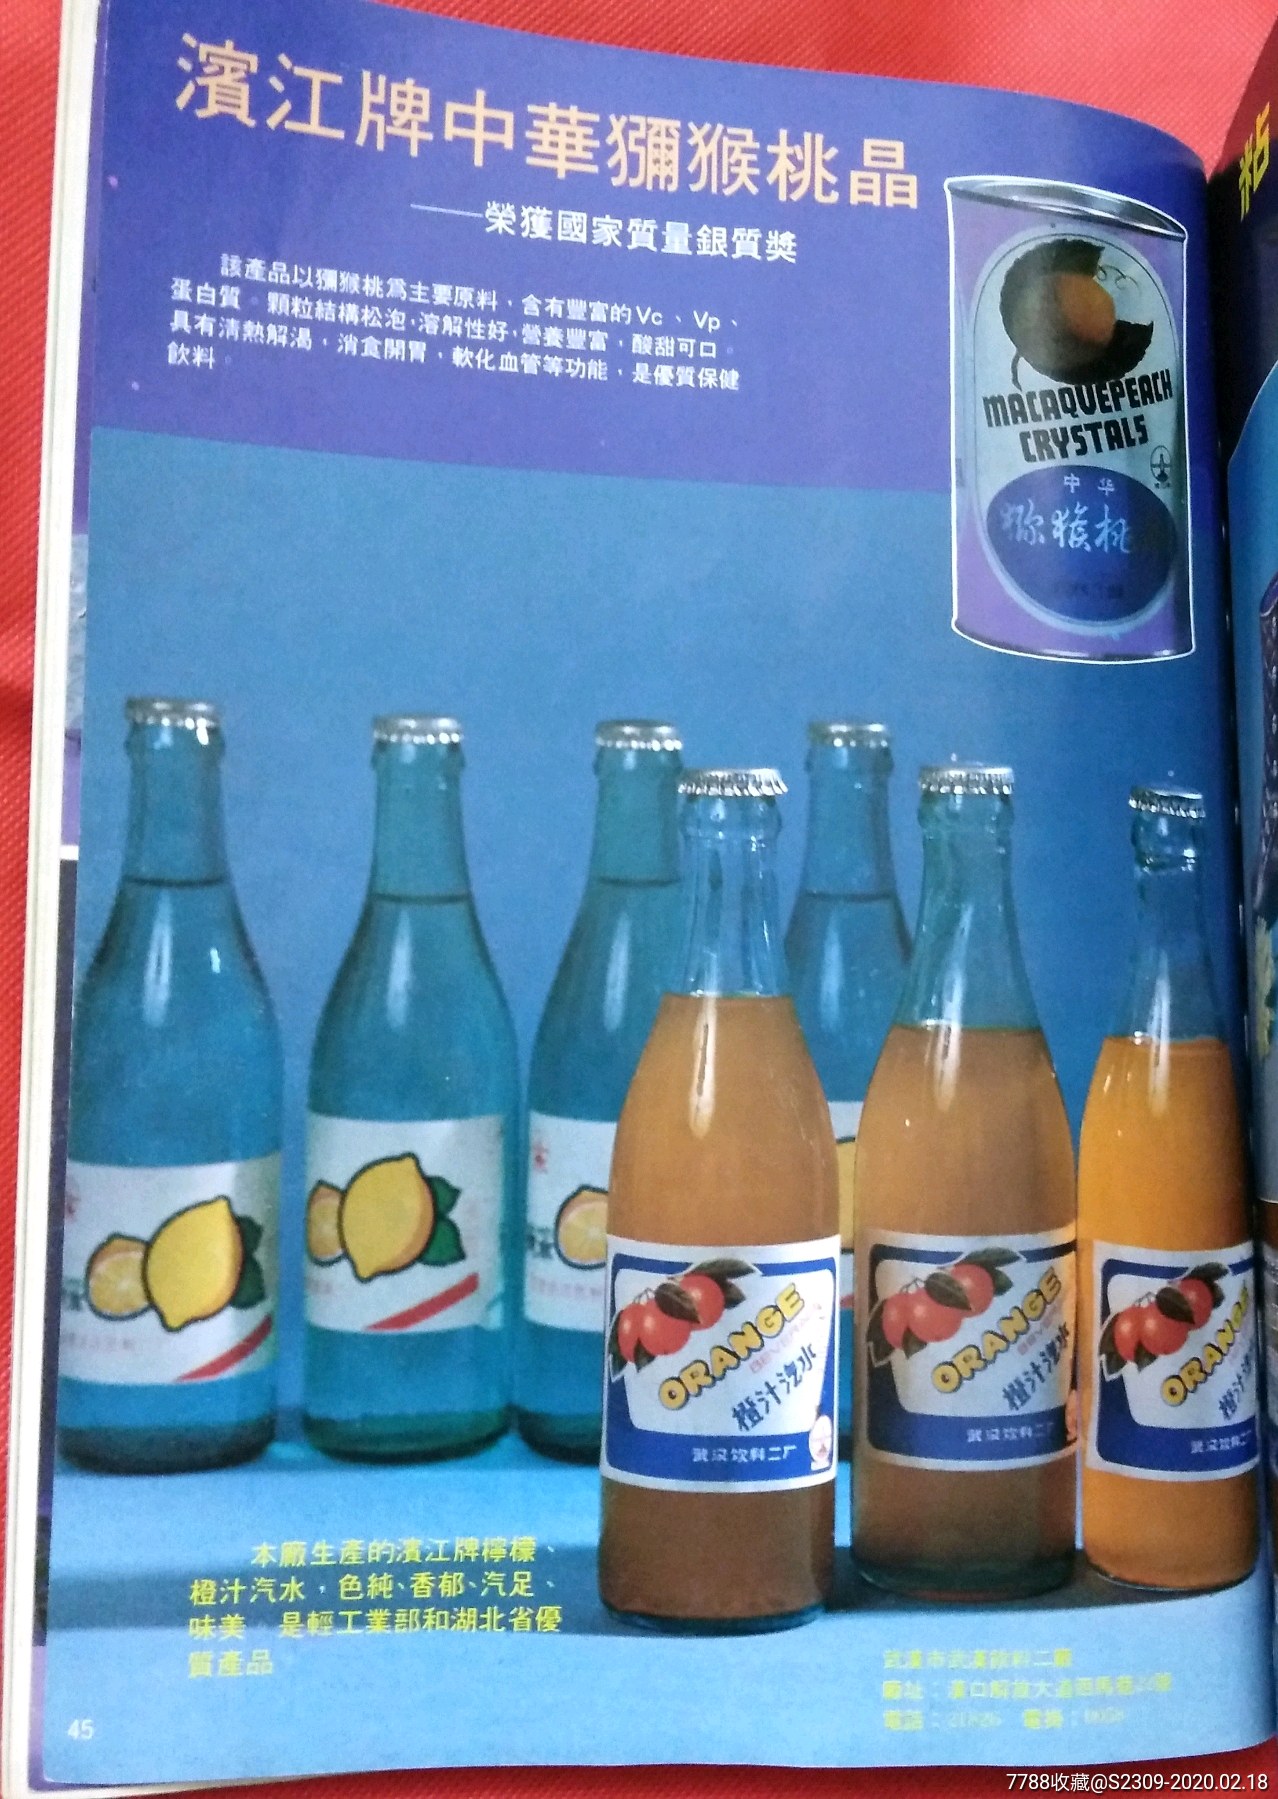 16开八十年代广告,45武汉饮料二厂滨江牌中华弥猴桃晶